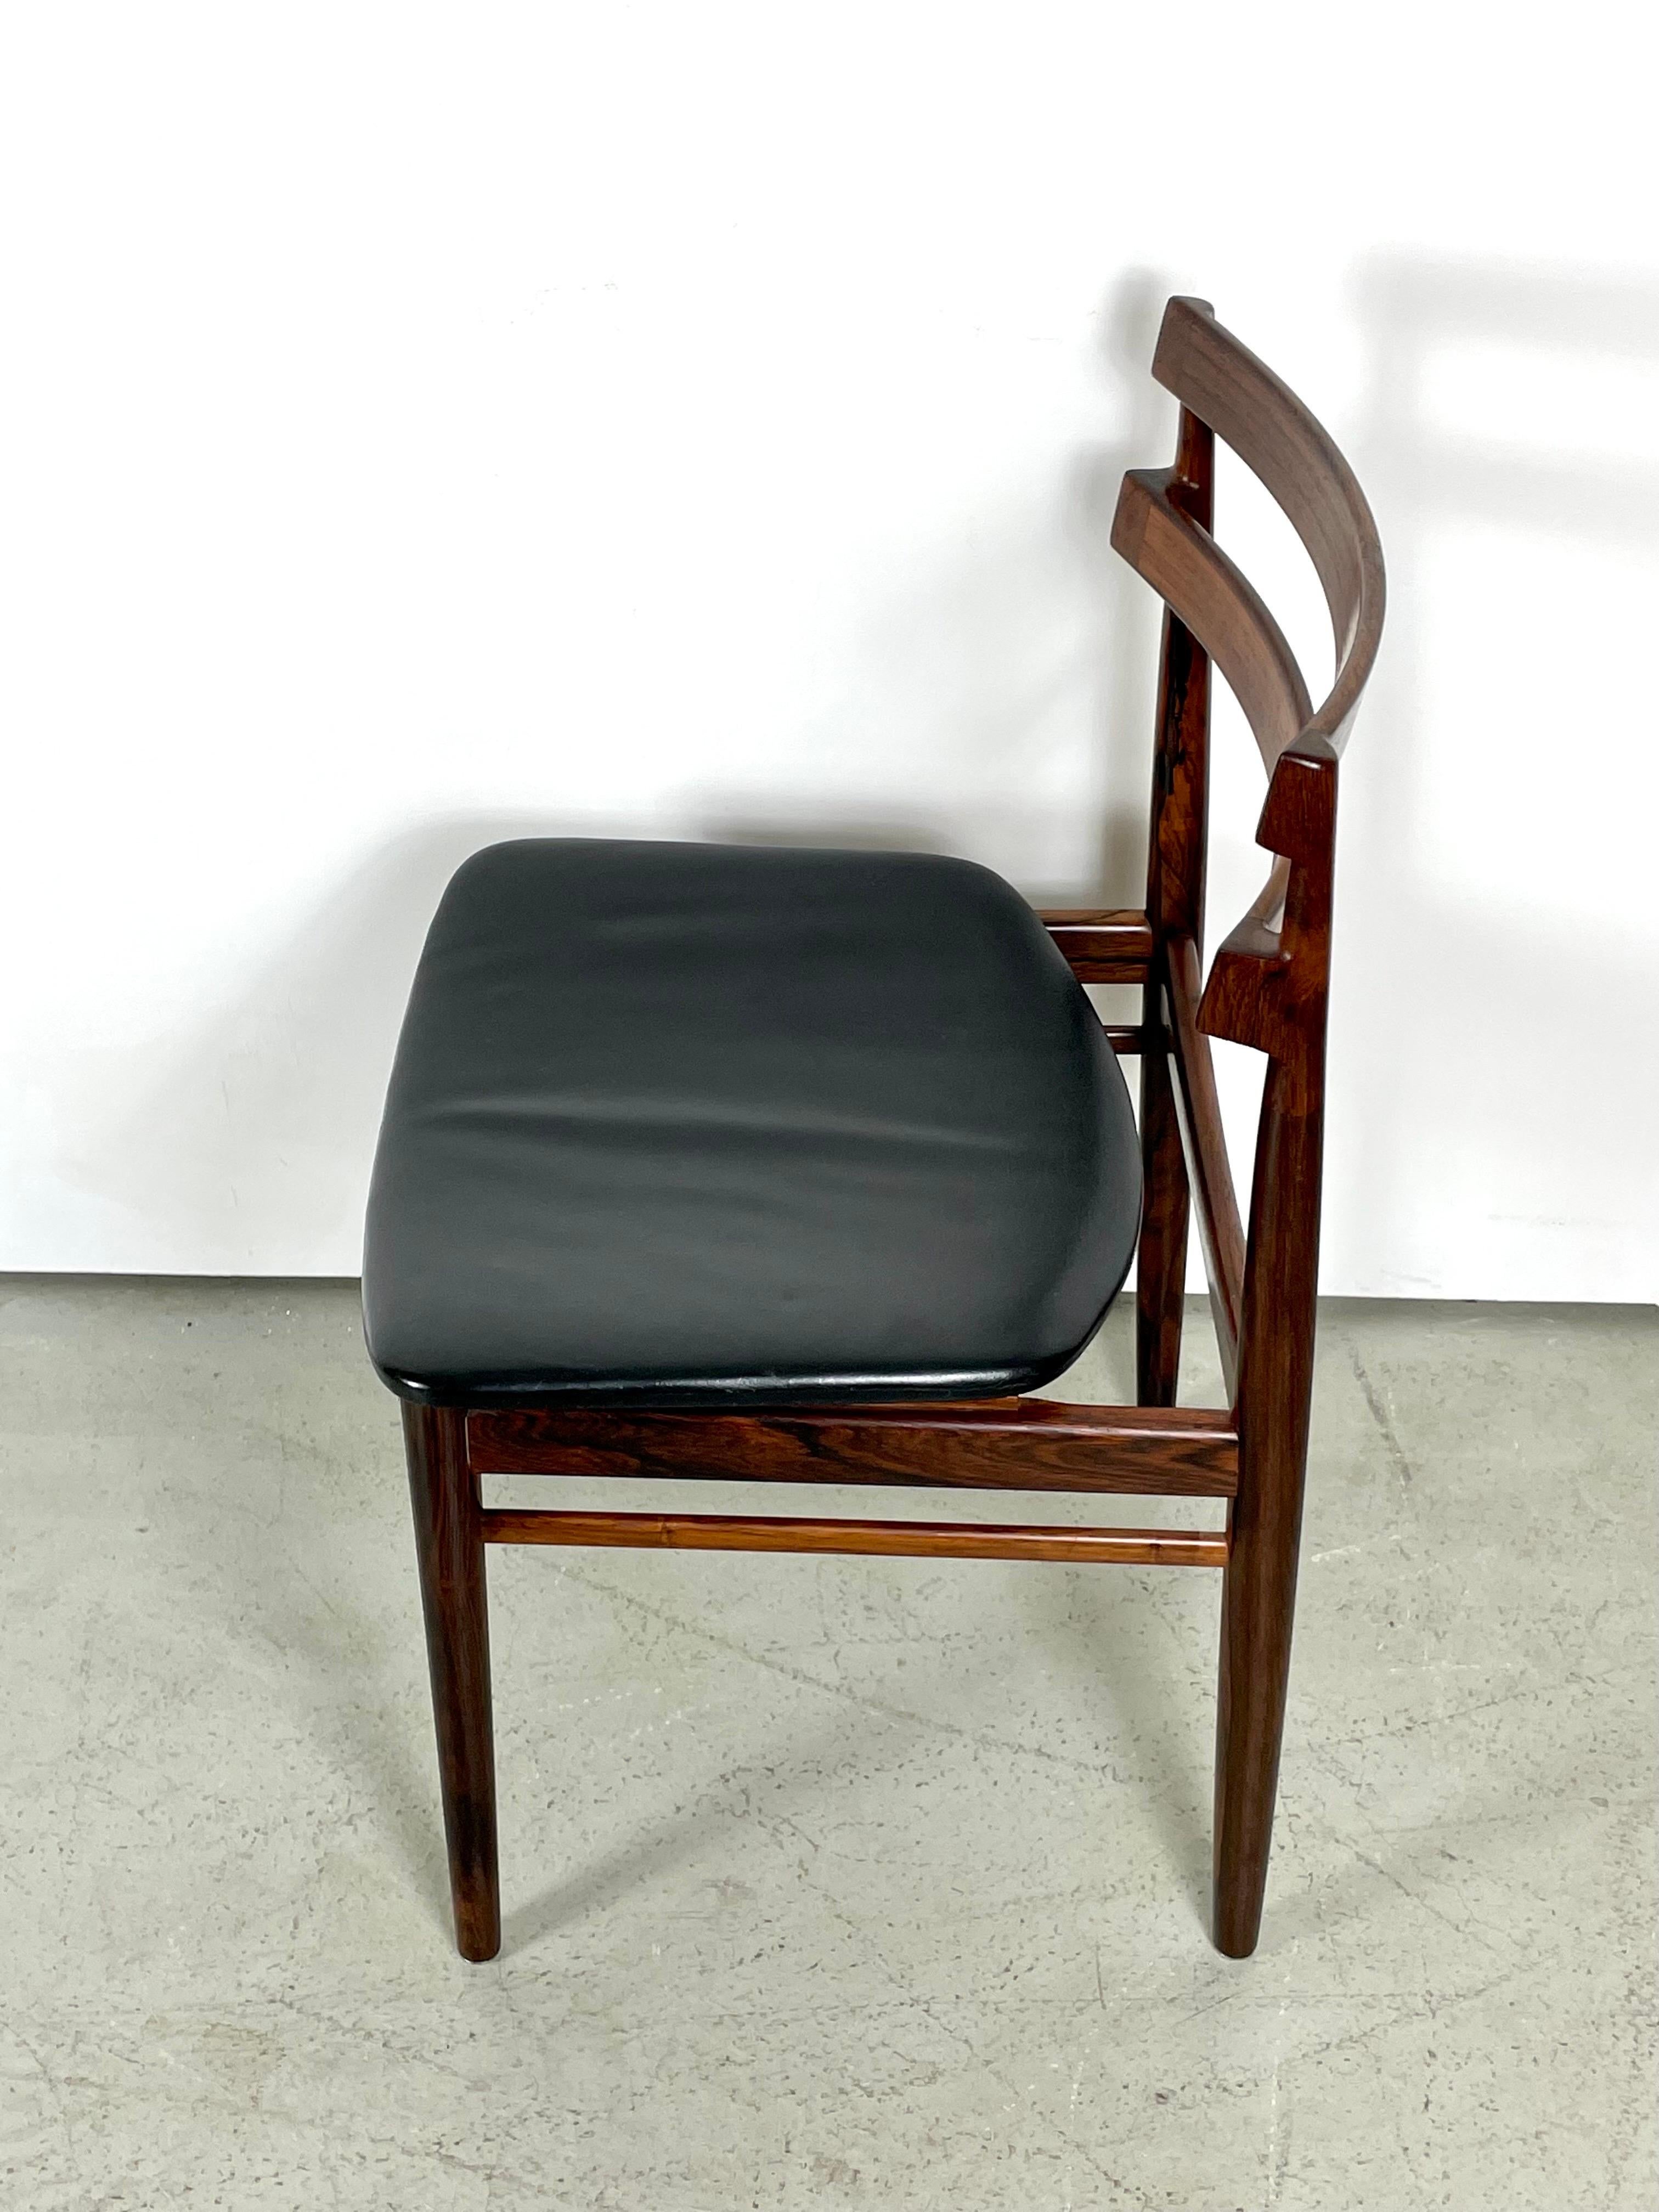 Danish Palisander Dining Chairs by Henry Rosengren for Brande Møbelfabrik 1950s Denmark For Sale